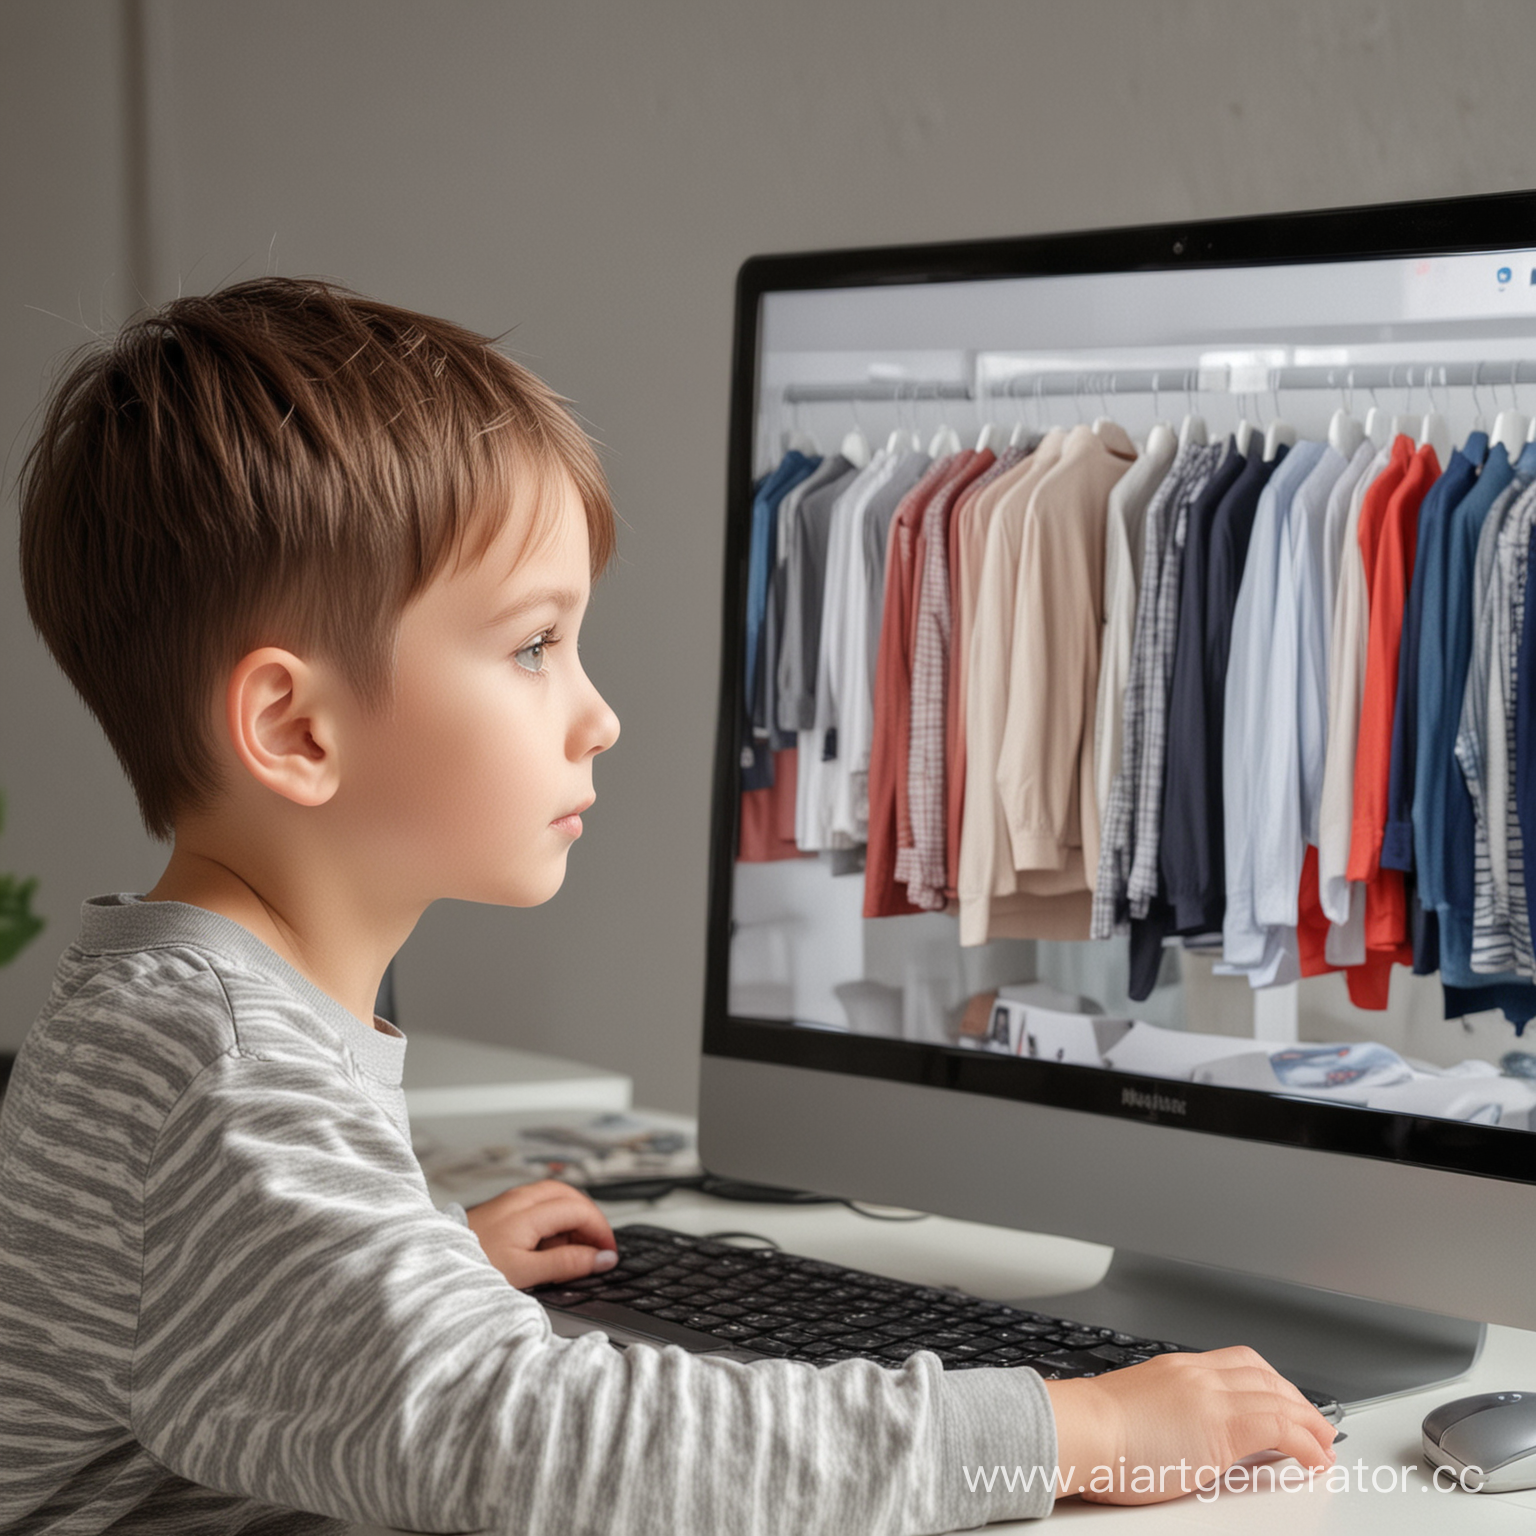 ребенок смотрит на рекламу одежды на компьютере, мальчик, он заинтересован